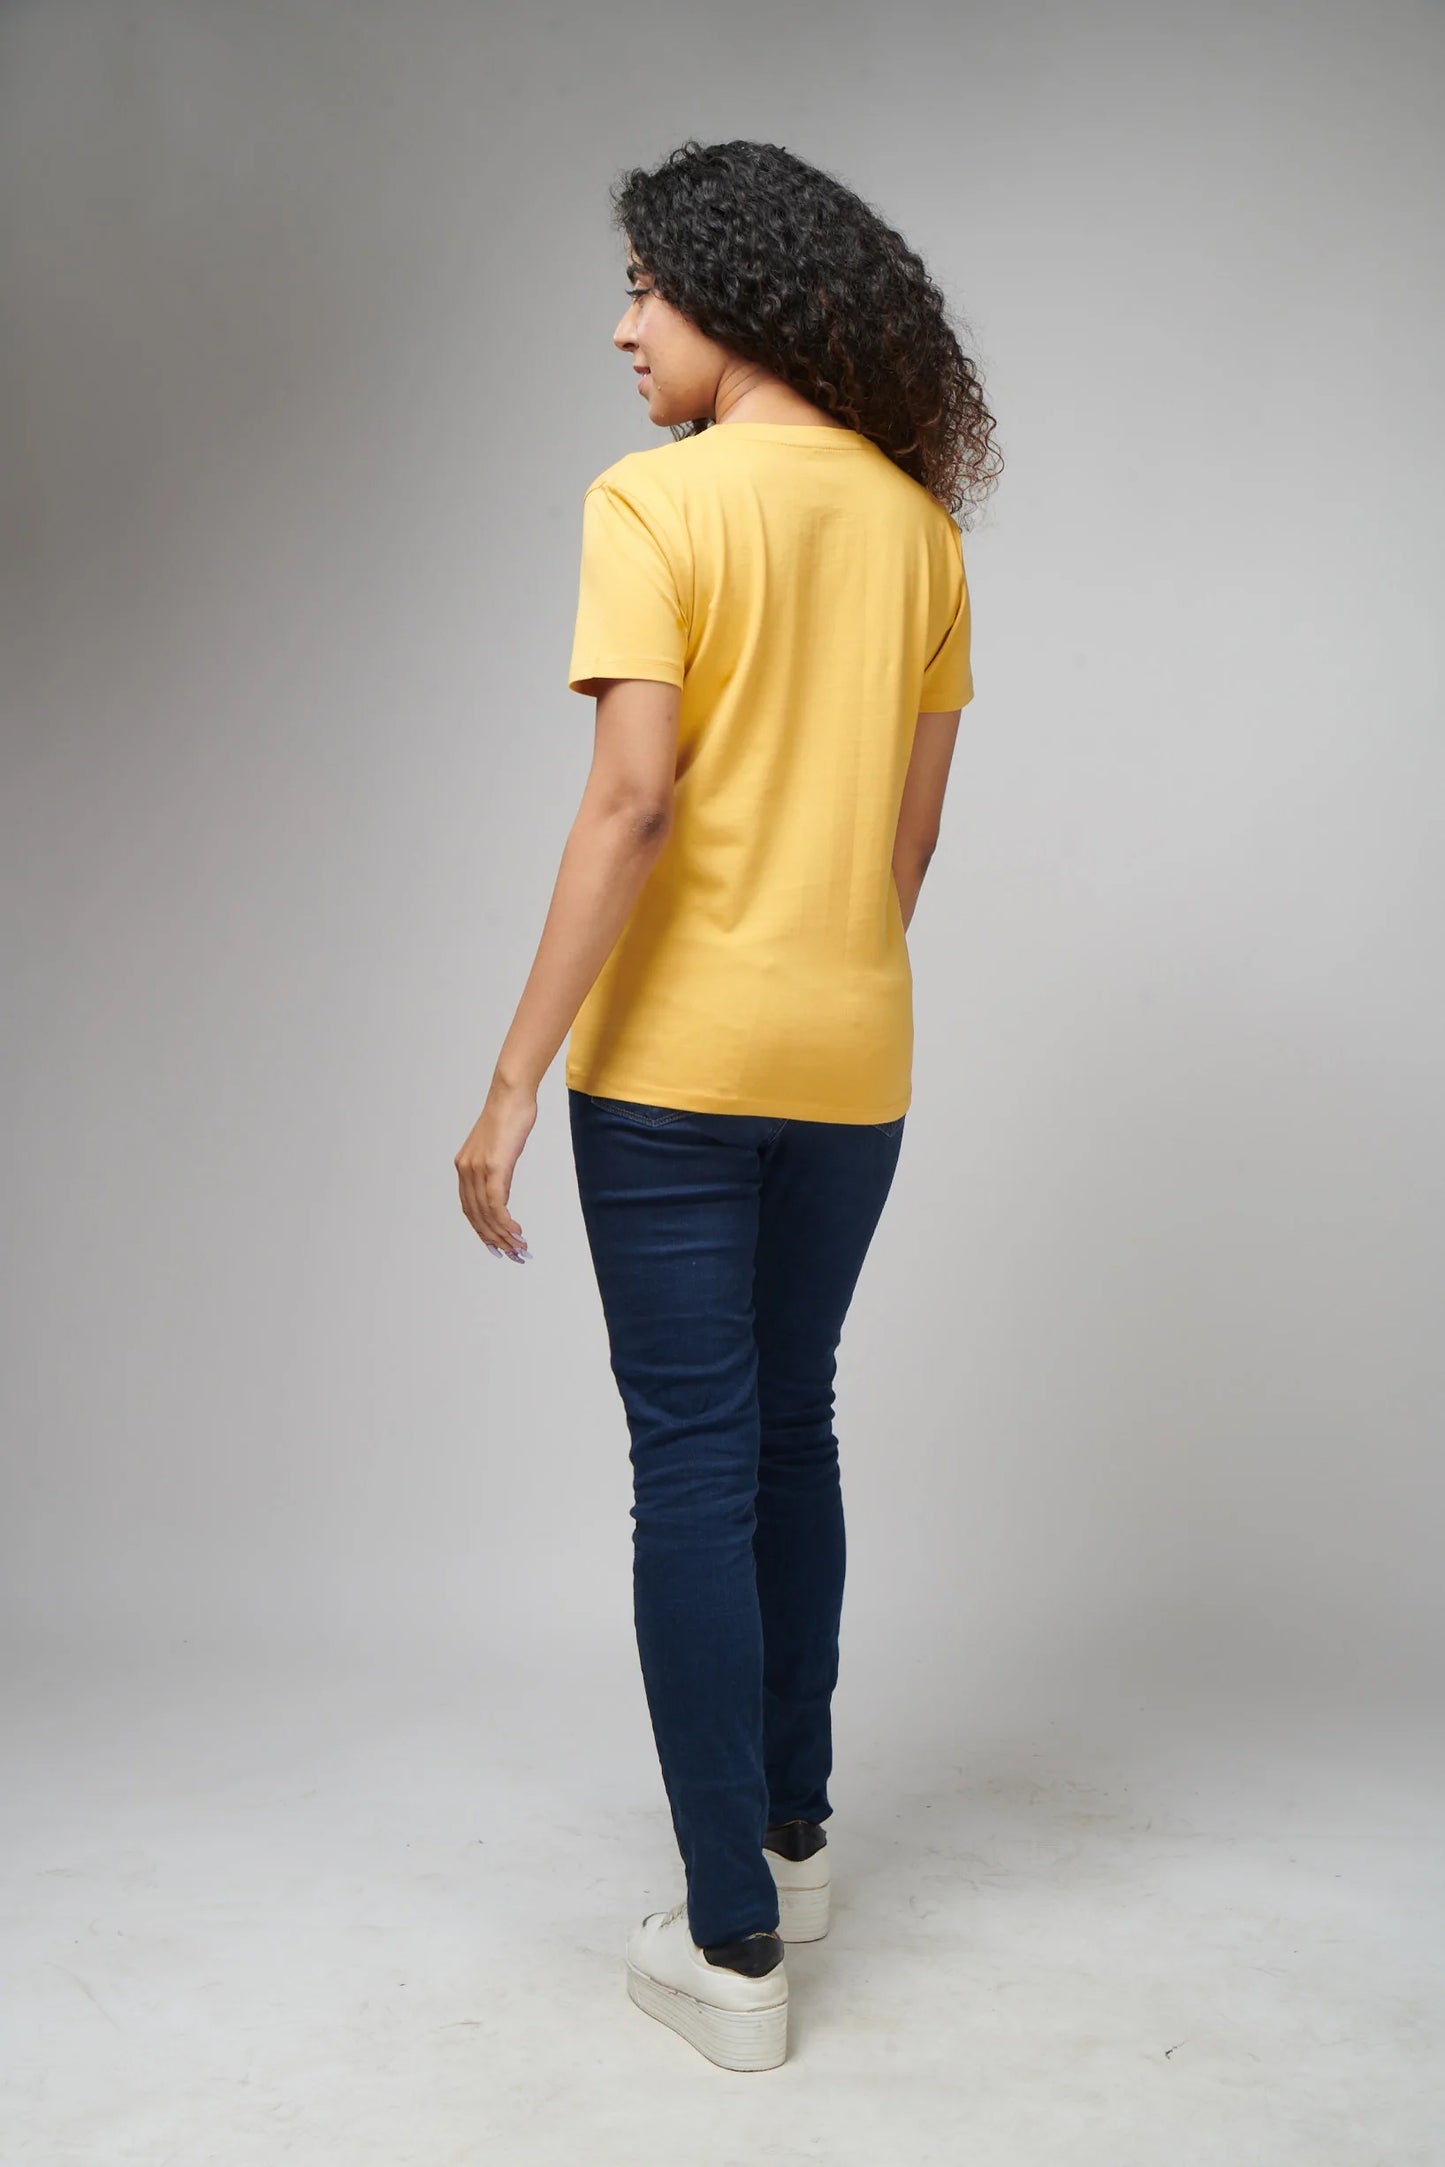 Women's Basic Yellow Half Sleeves T-Shirt